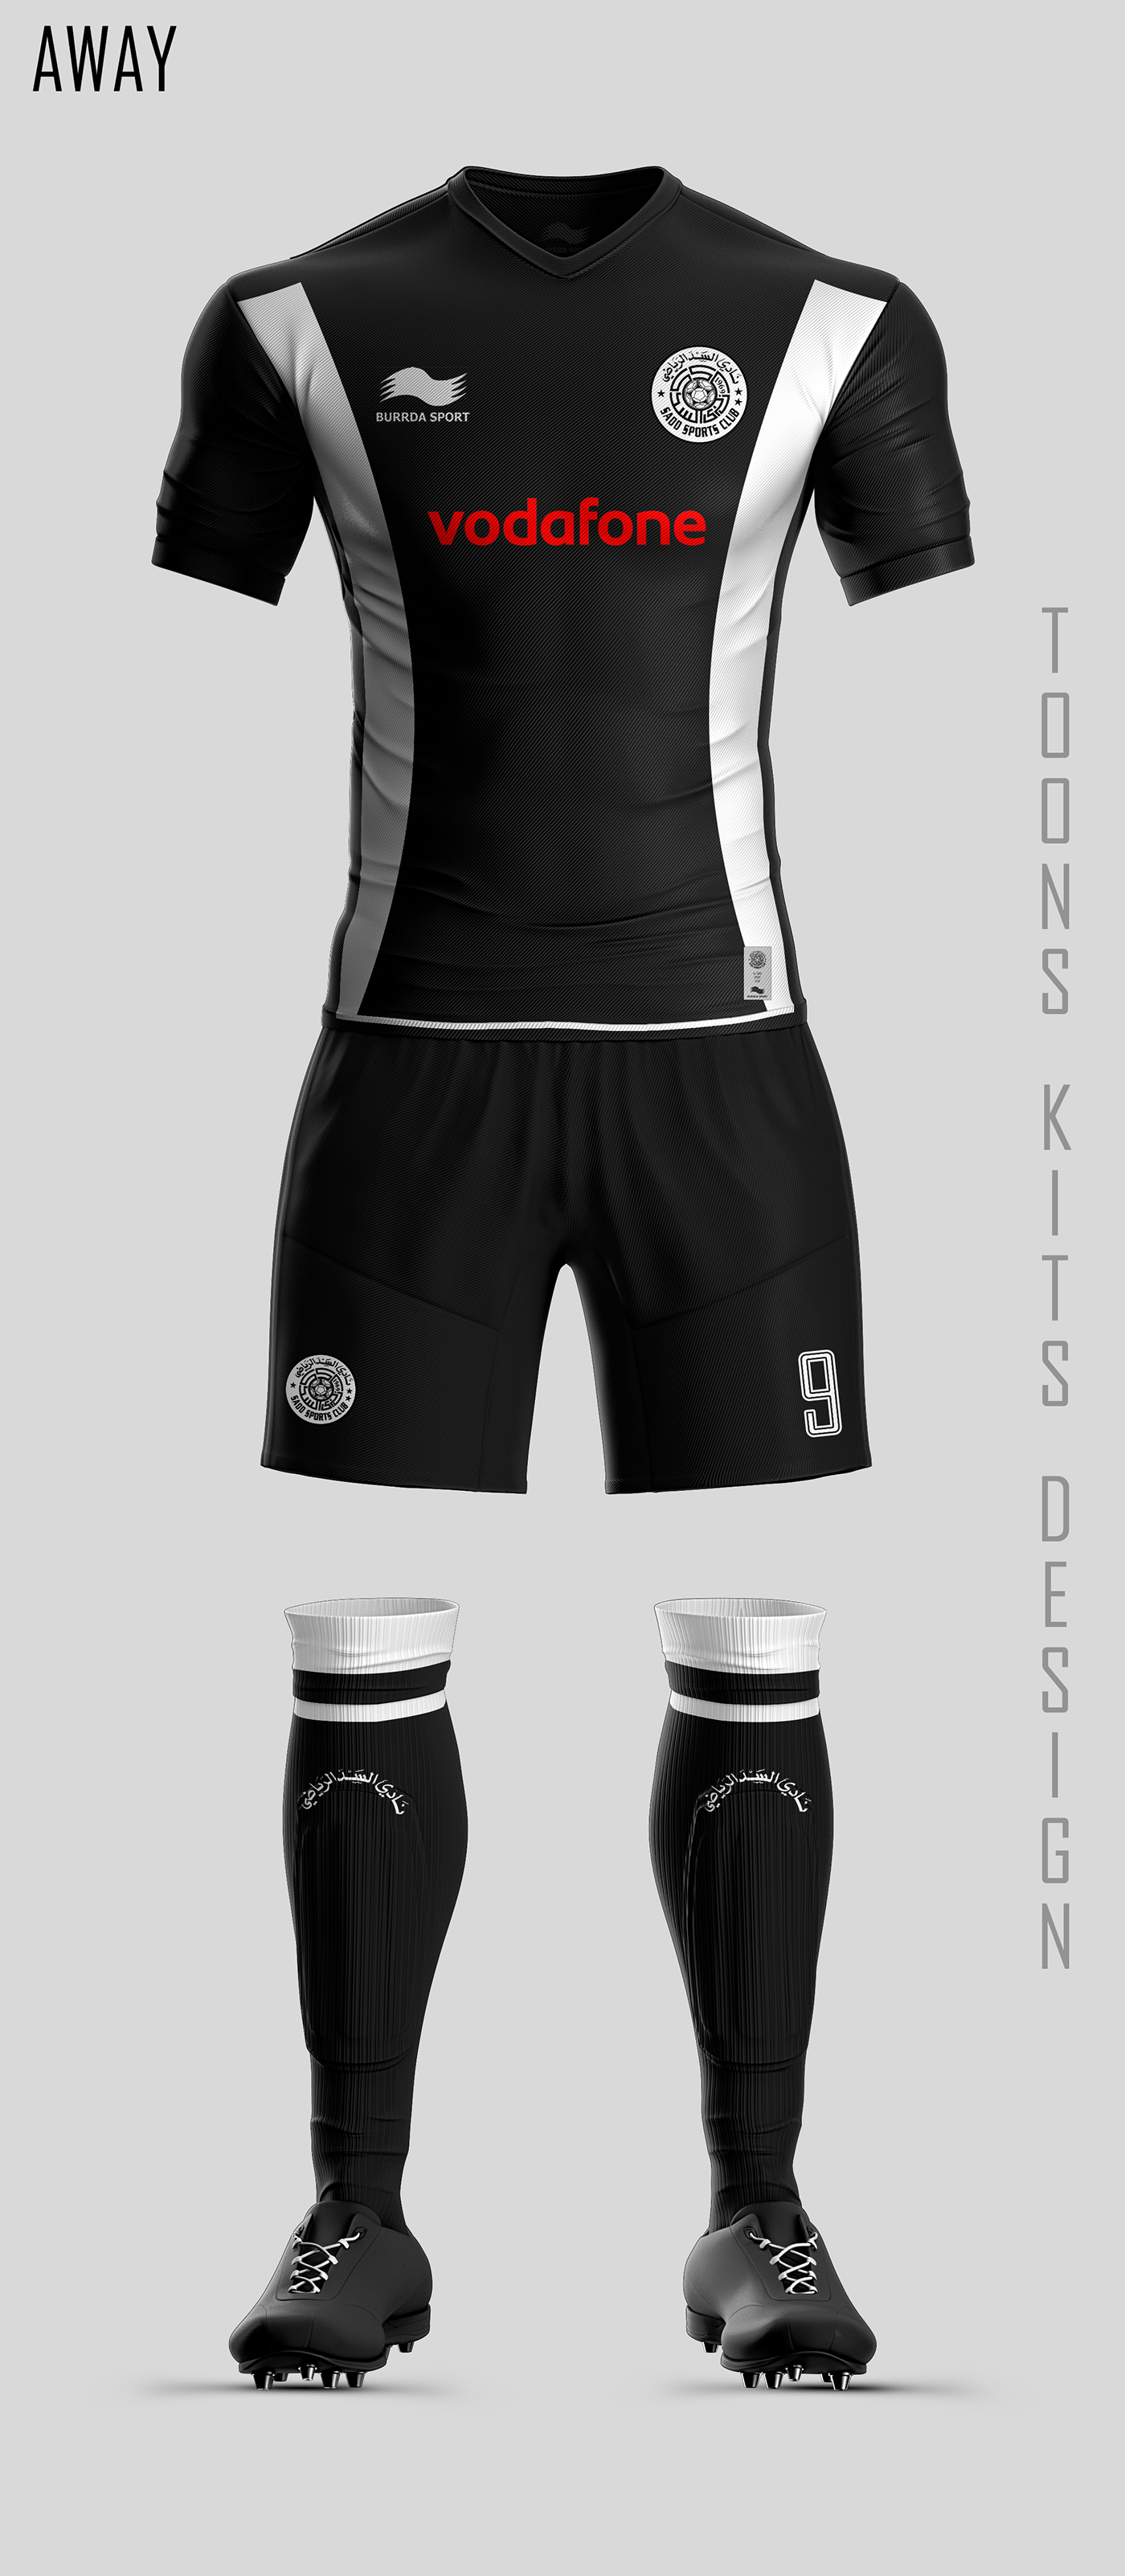 ALSADD conceptkit KitDesign football soccer alsaddsc vodafone Burrdasport kit